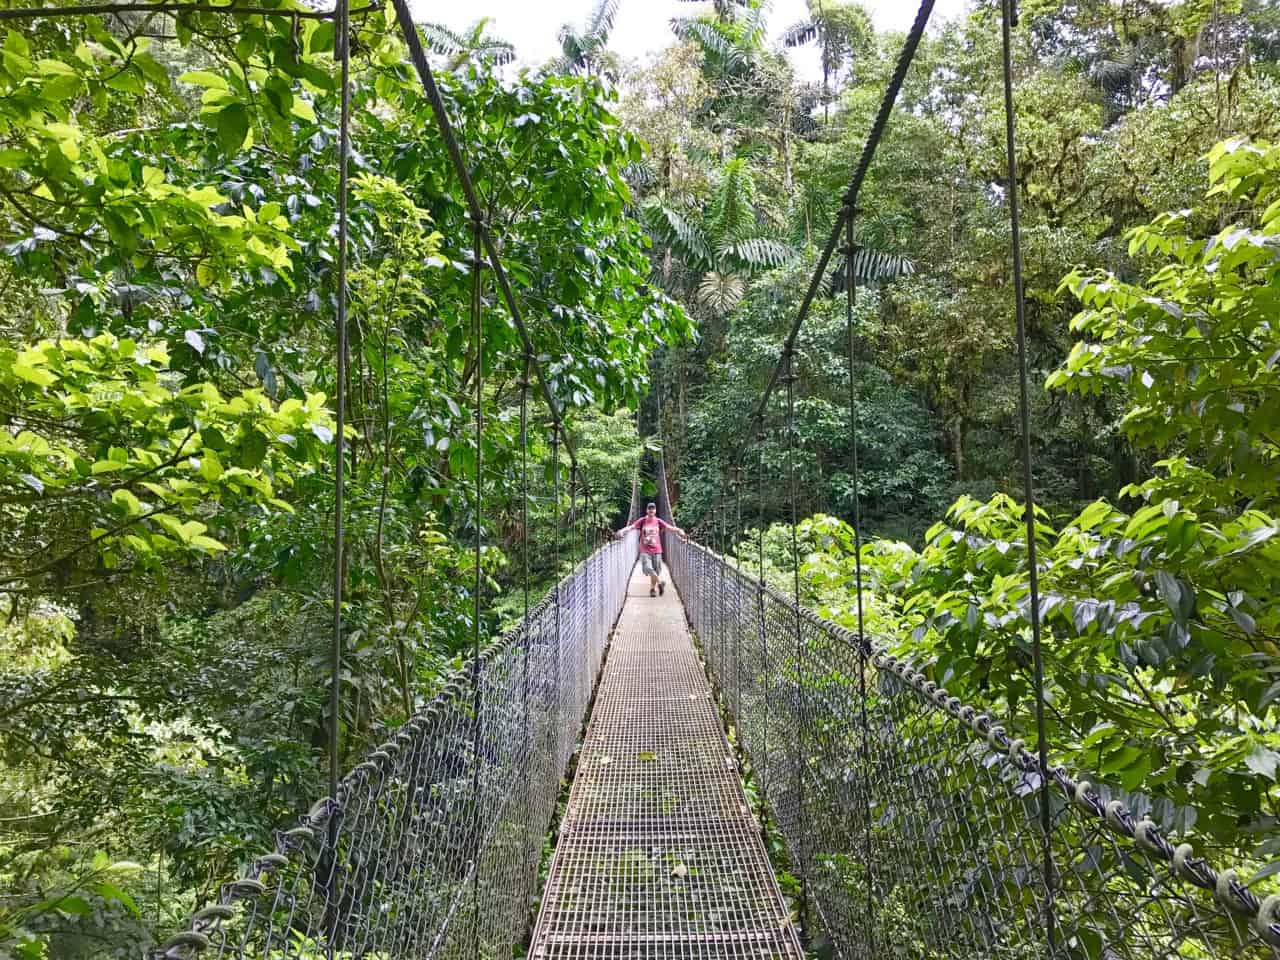 요한은 코스타리카의 공원 인 미스티 코의 캐노피 위에 매달려있는 다리에 서 있습니다.